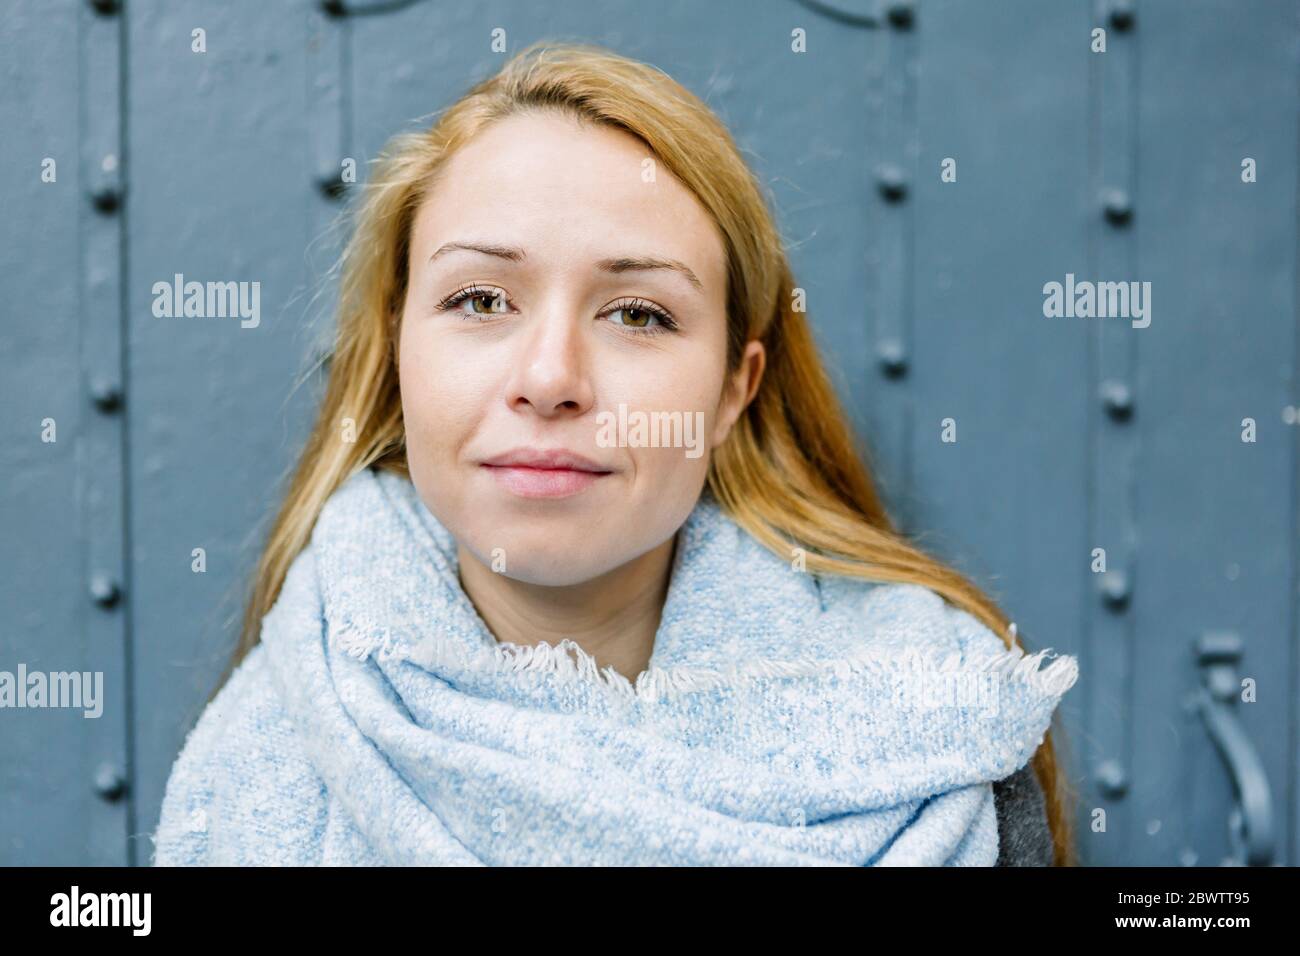 Retrato de una joven rubia con bufanda azul claro Foto de stock